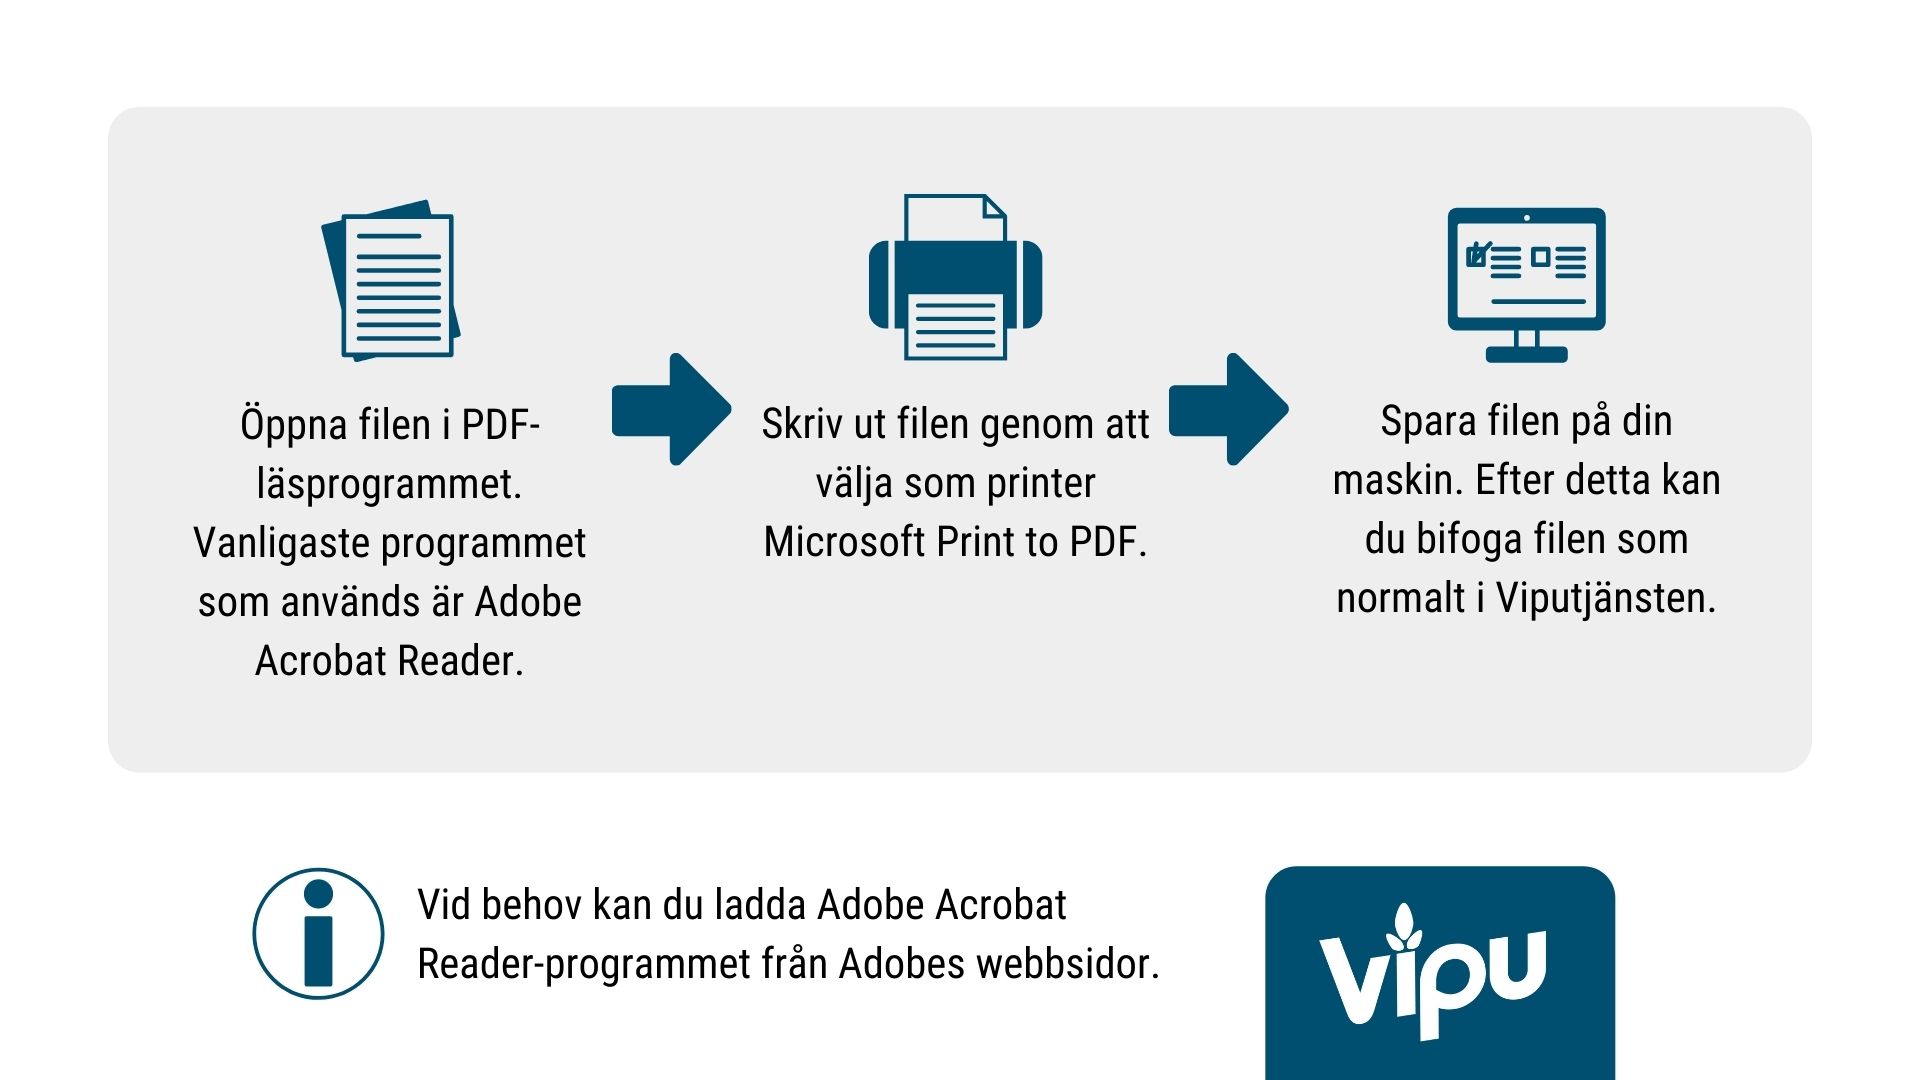 Öppna filen i PDF-läsprogrammet. Vanligaste programmet som används är Adobe Acrobat Reader. Vid behov kan du ladda Adobe Acrobat Reader-programmet från Adobes webbsidor. Skriv ut filen genom att välja som printer Microsoft Print to PDF. Spara filen på din maskin. Efter detta kan du bifoga filen som normalt i Viputjänsten.